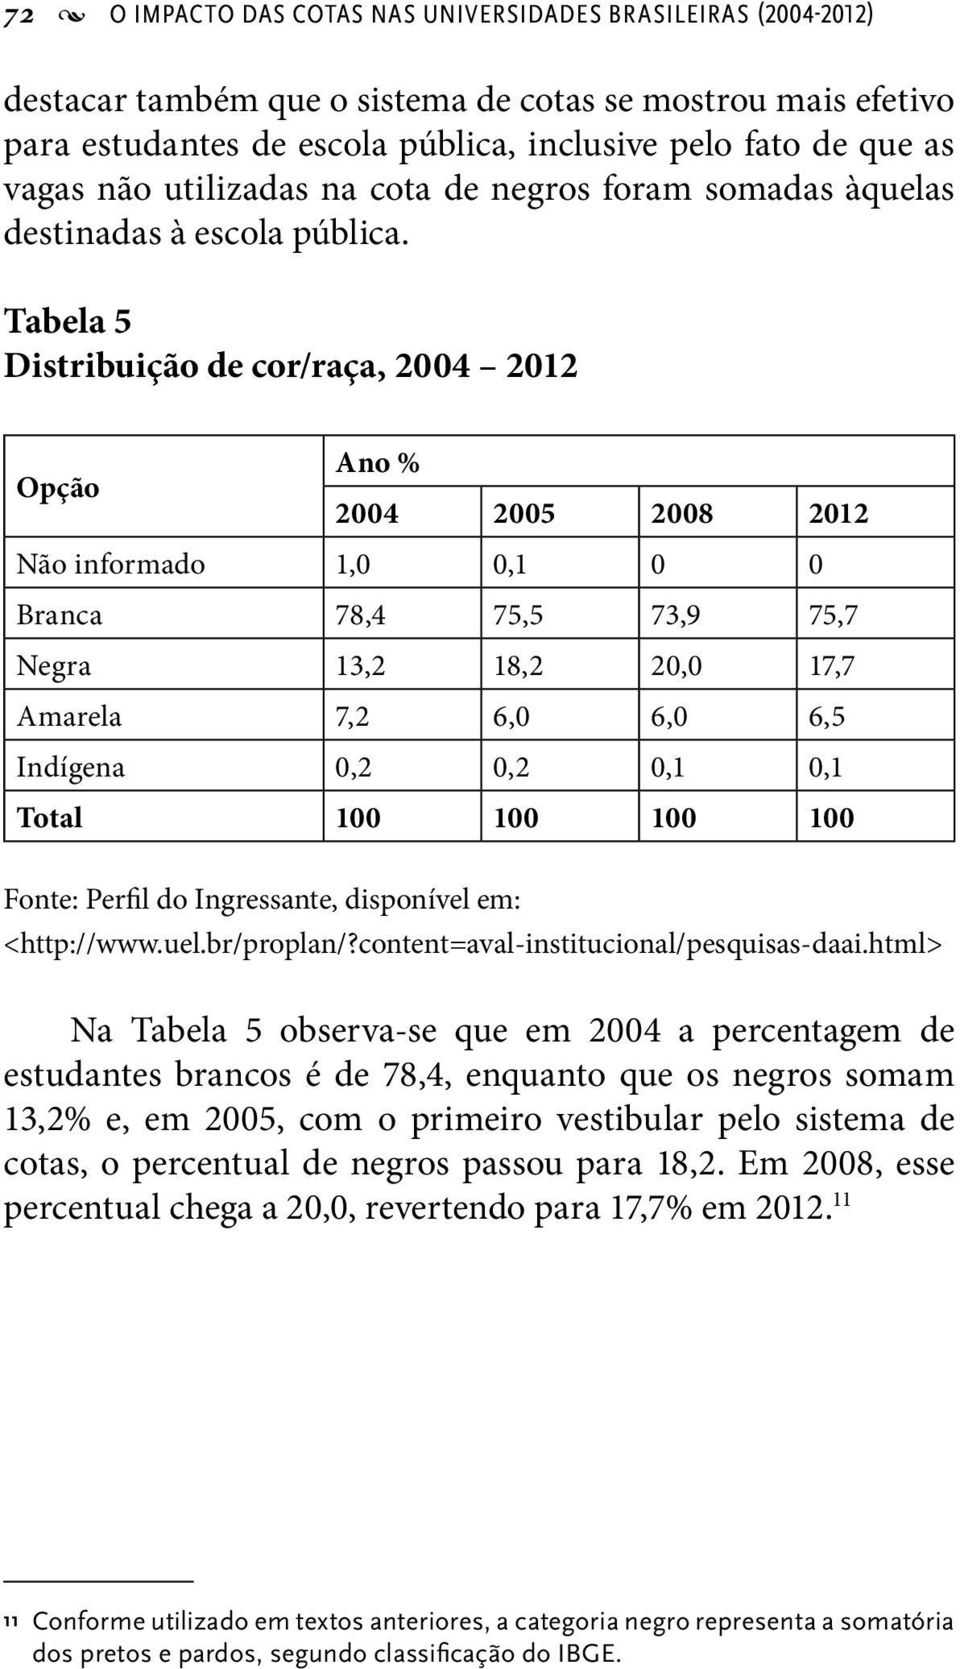 Tabela 5 Distribuição de cor/raça, 2004 2012 Opção Ano % 2004 2005 2008 2012 Não informado 1,0 0,1 0 0 Branca 78,4 75,5 73,9 75,7 Negra 13,2 18,2 20,0 17,7 Amarela 7,2 6,0 6,0 6,5 Indígena 0,2 0,2